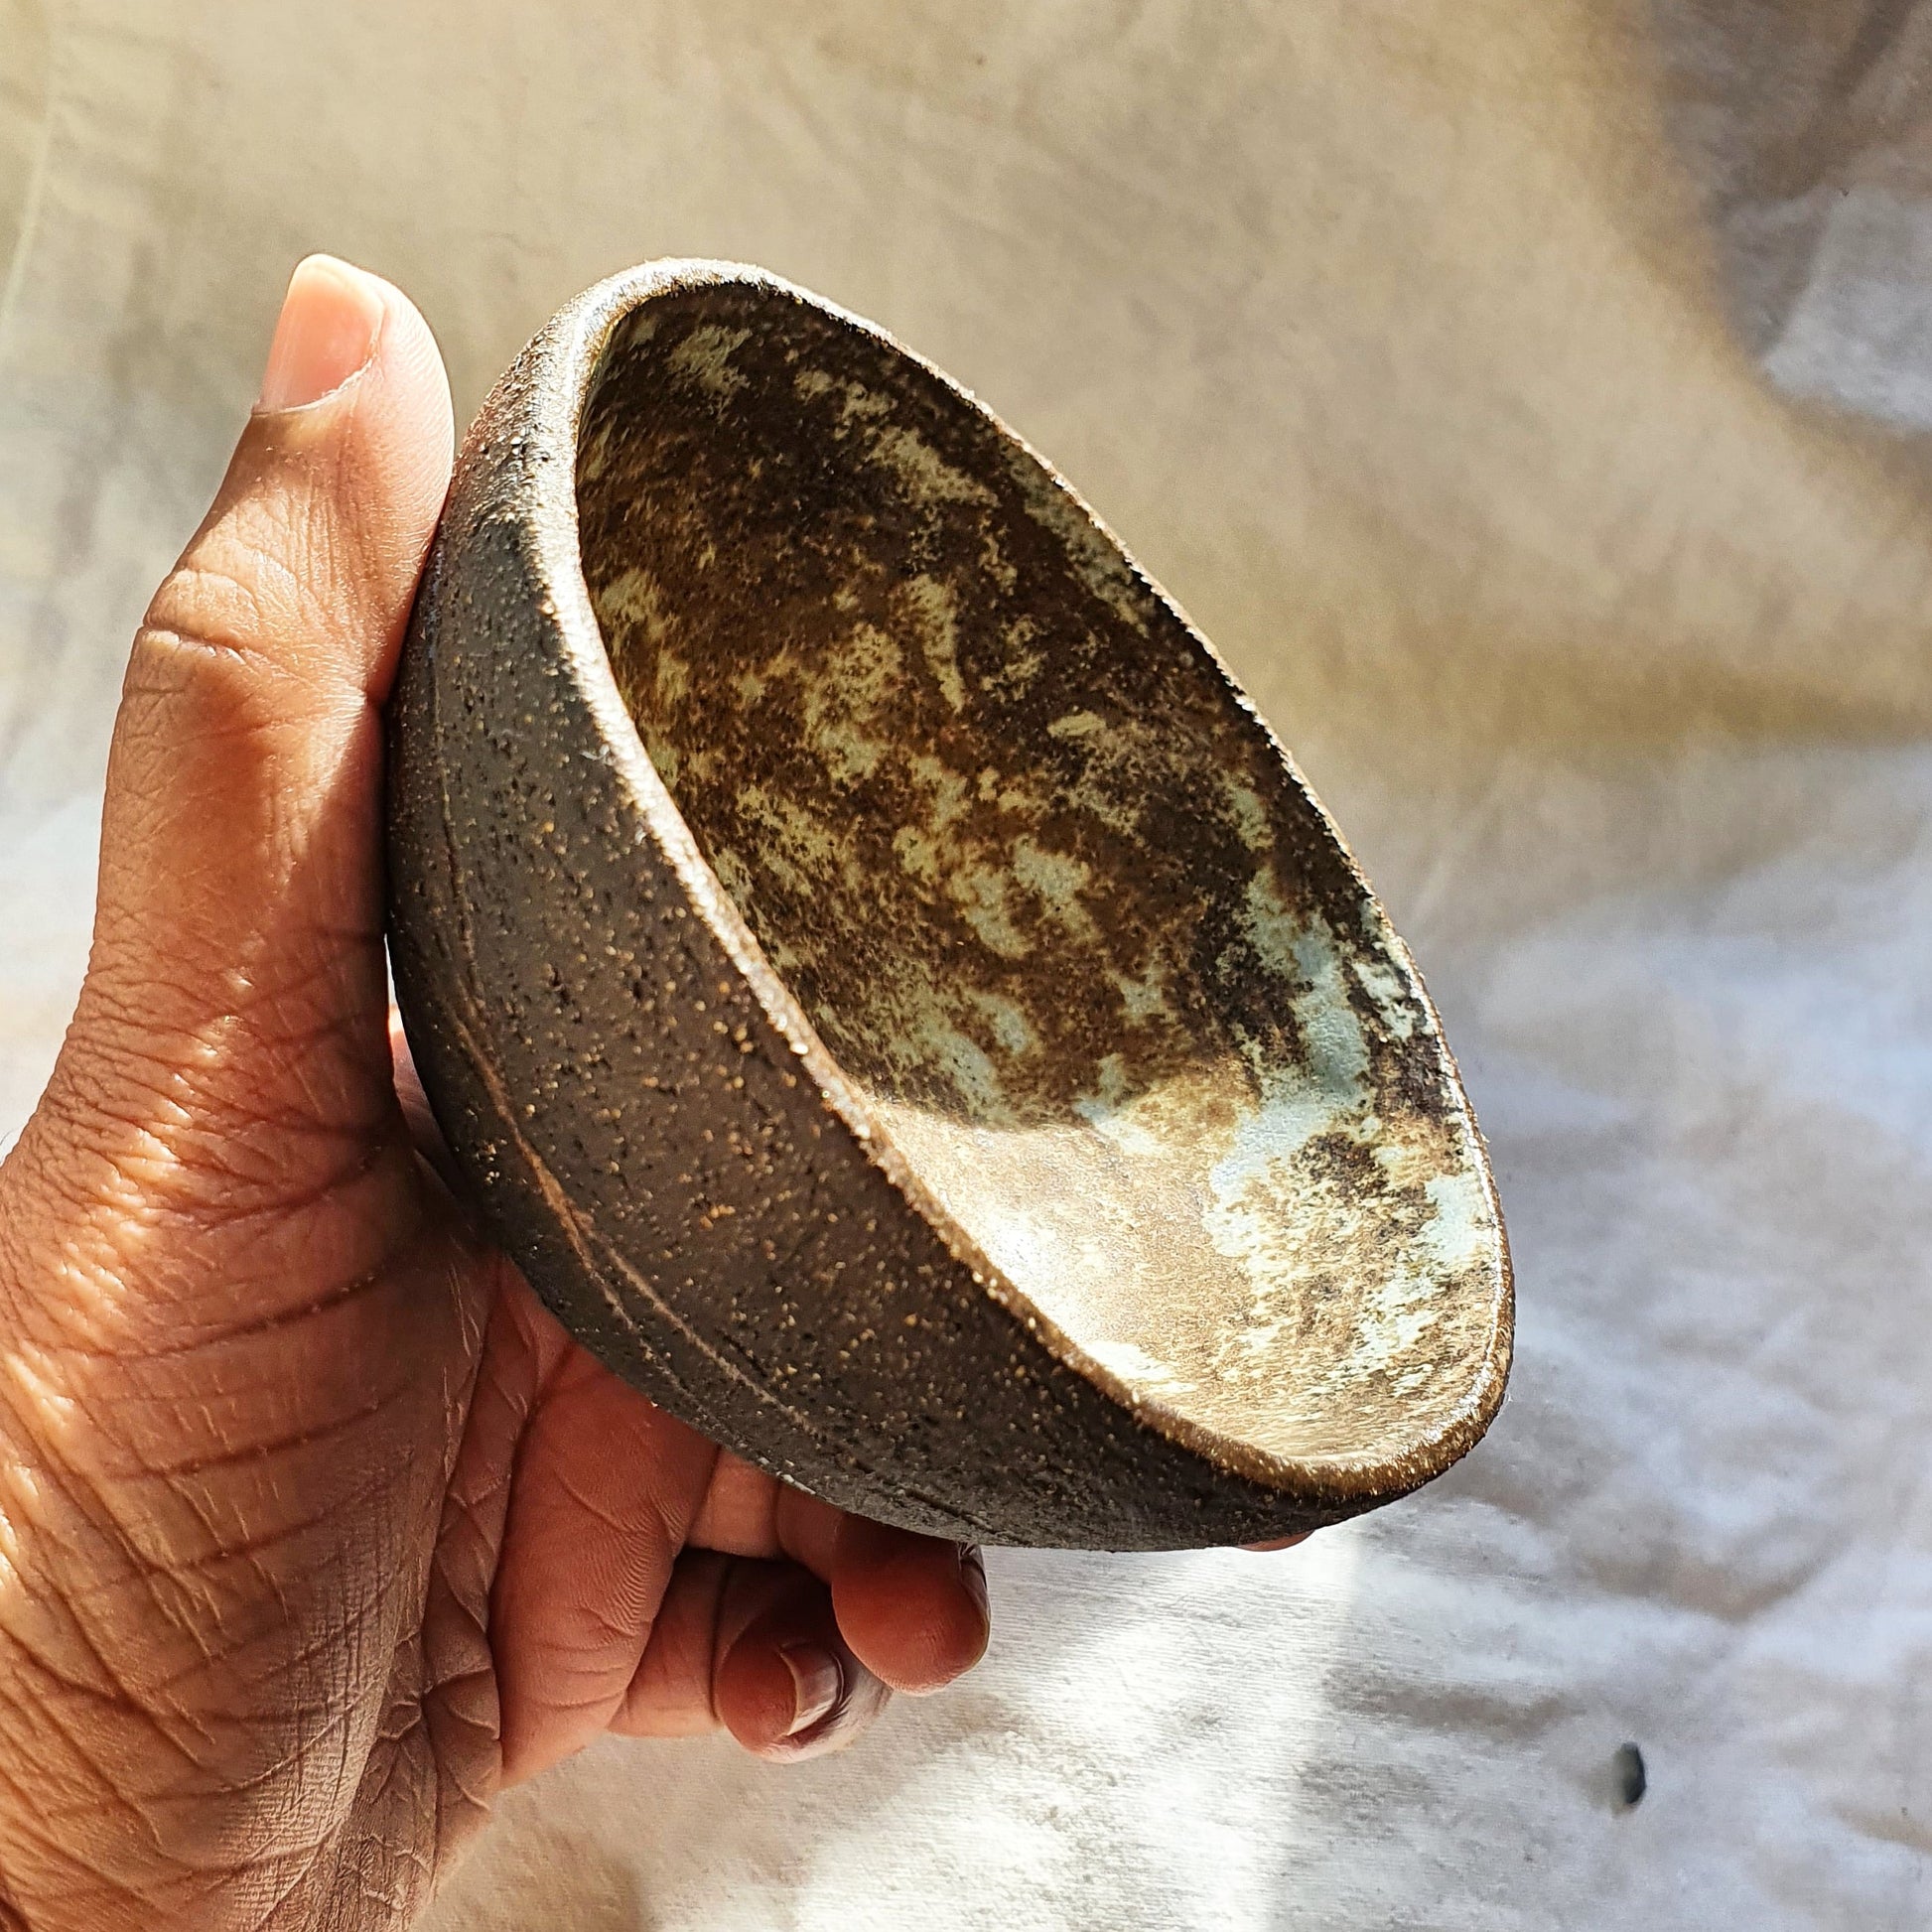 The Ritual Bowl handmade